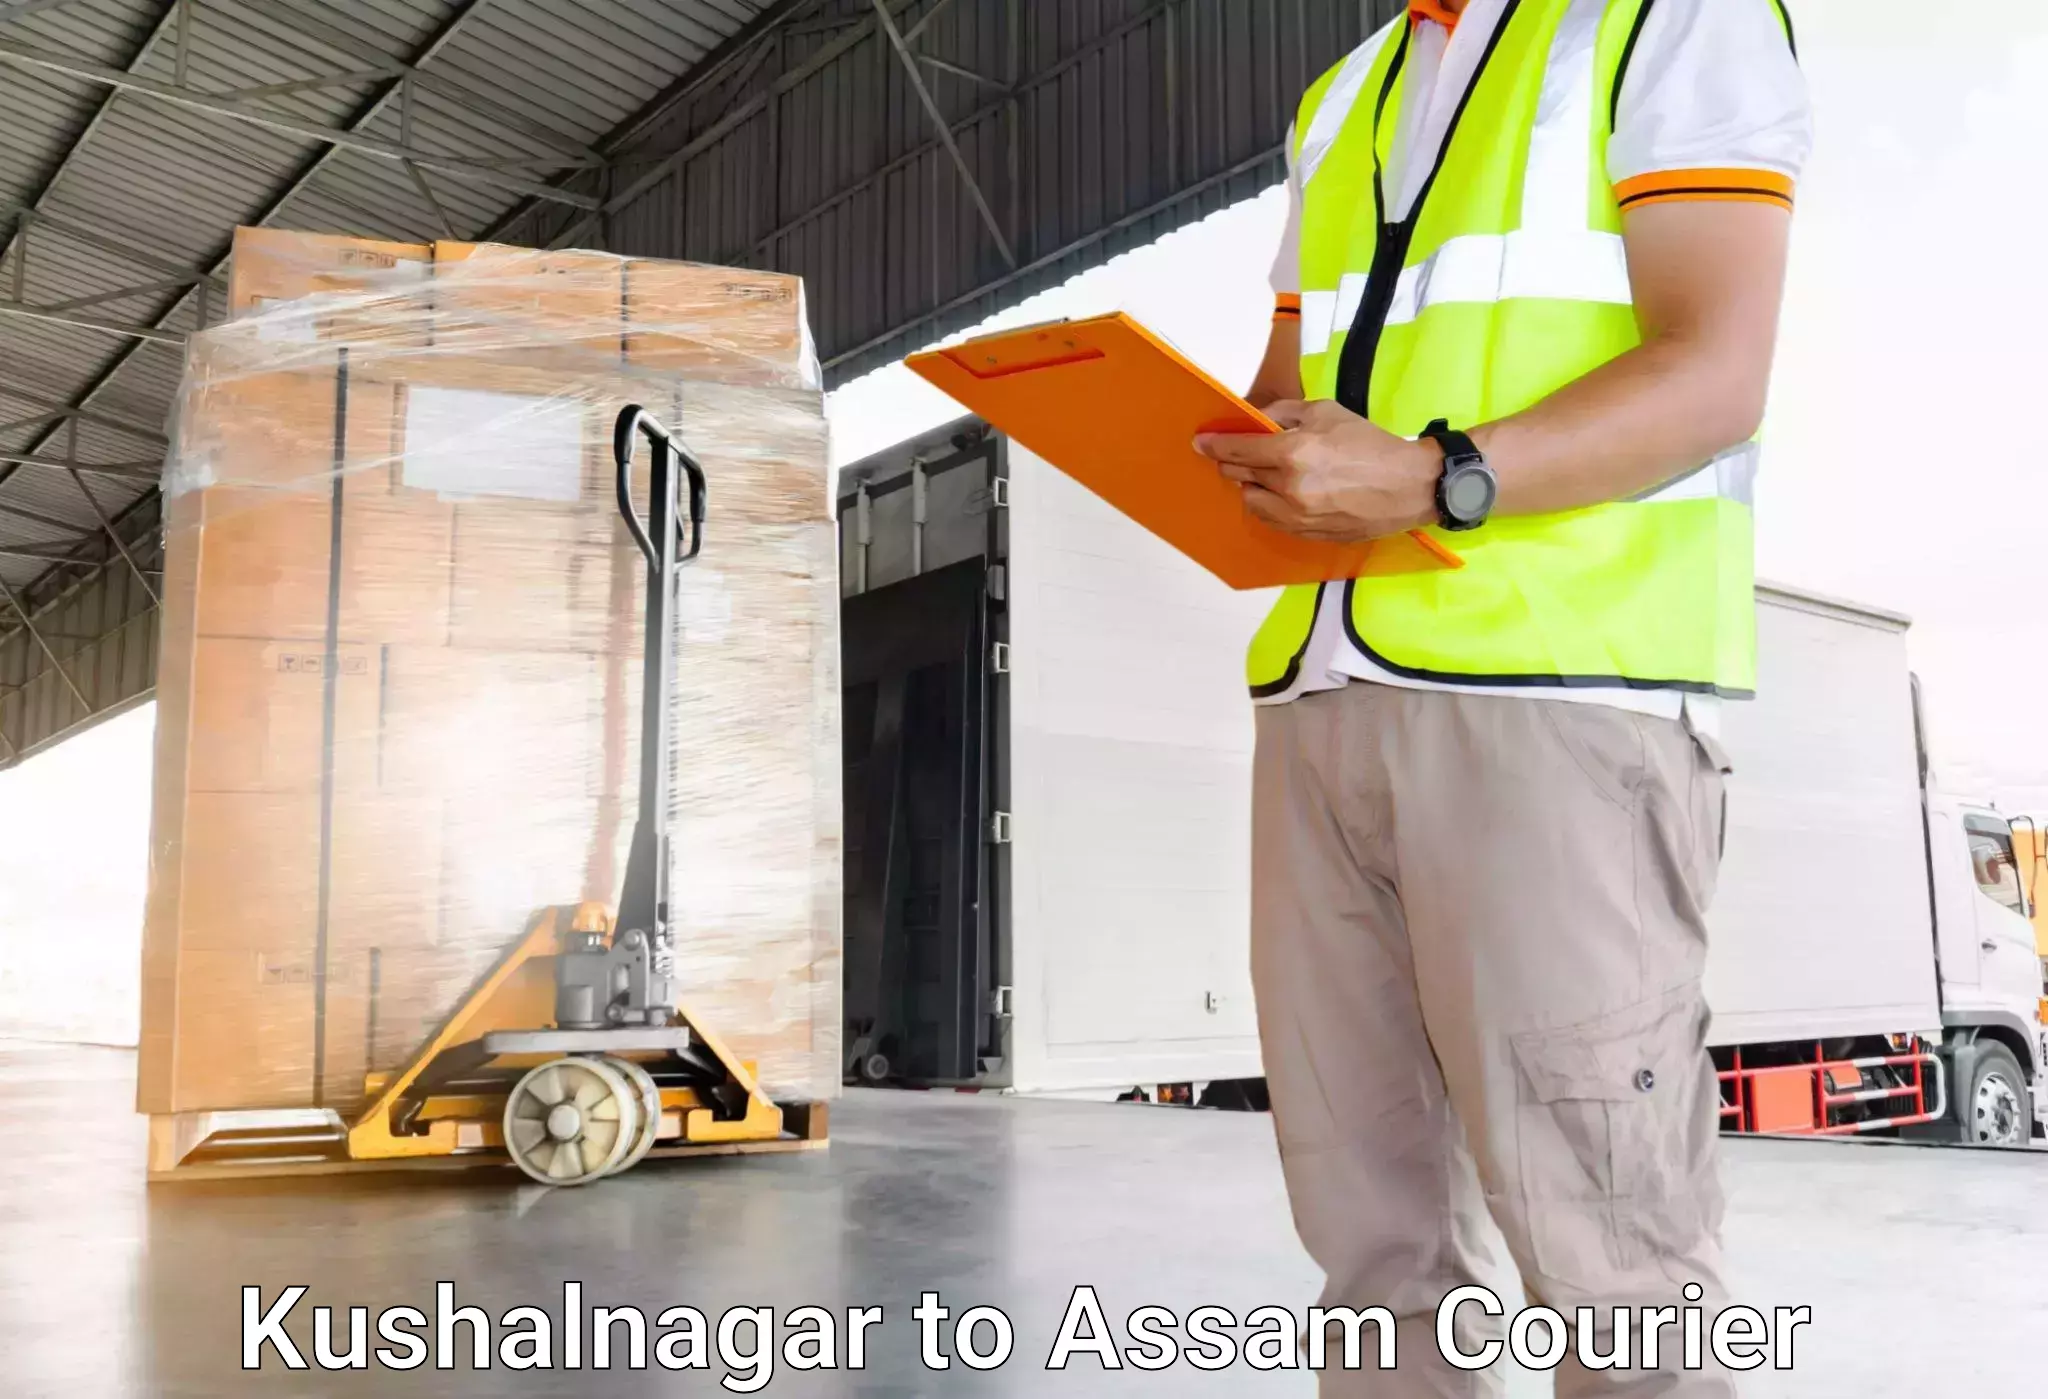 Luggage shipment processing in Kushalnagar to Lalapur Hailakandi